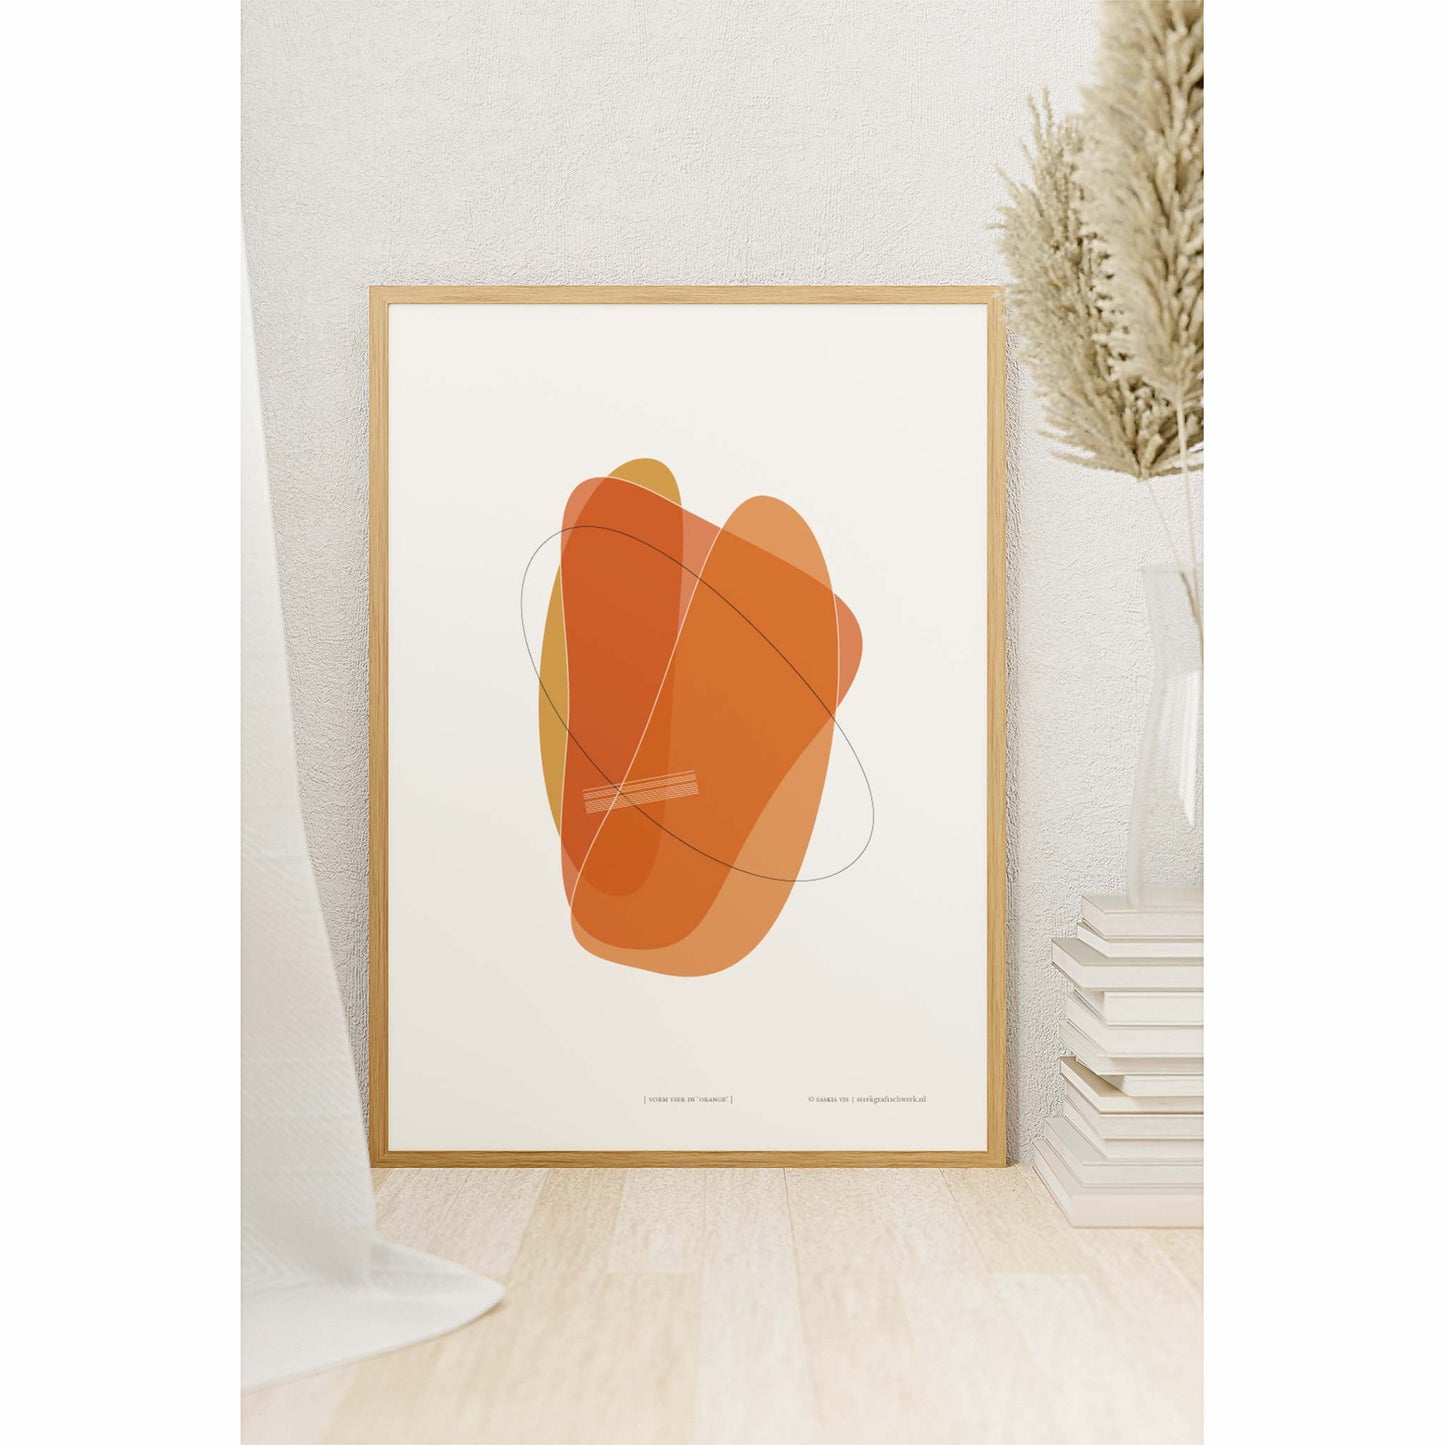 Productafbeelding poster "vorm vier in orange" 2de impressie foto ingelijst en staande in een interieur